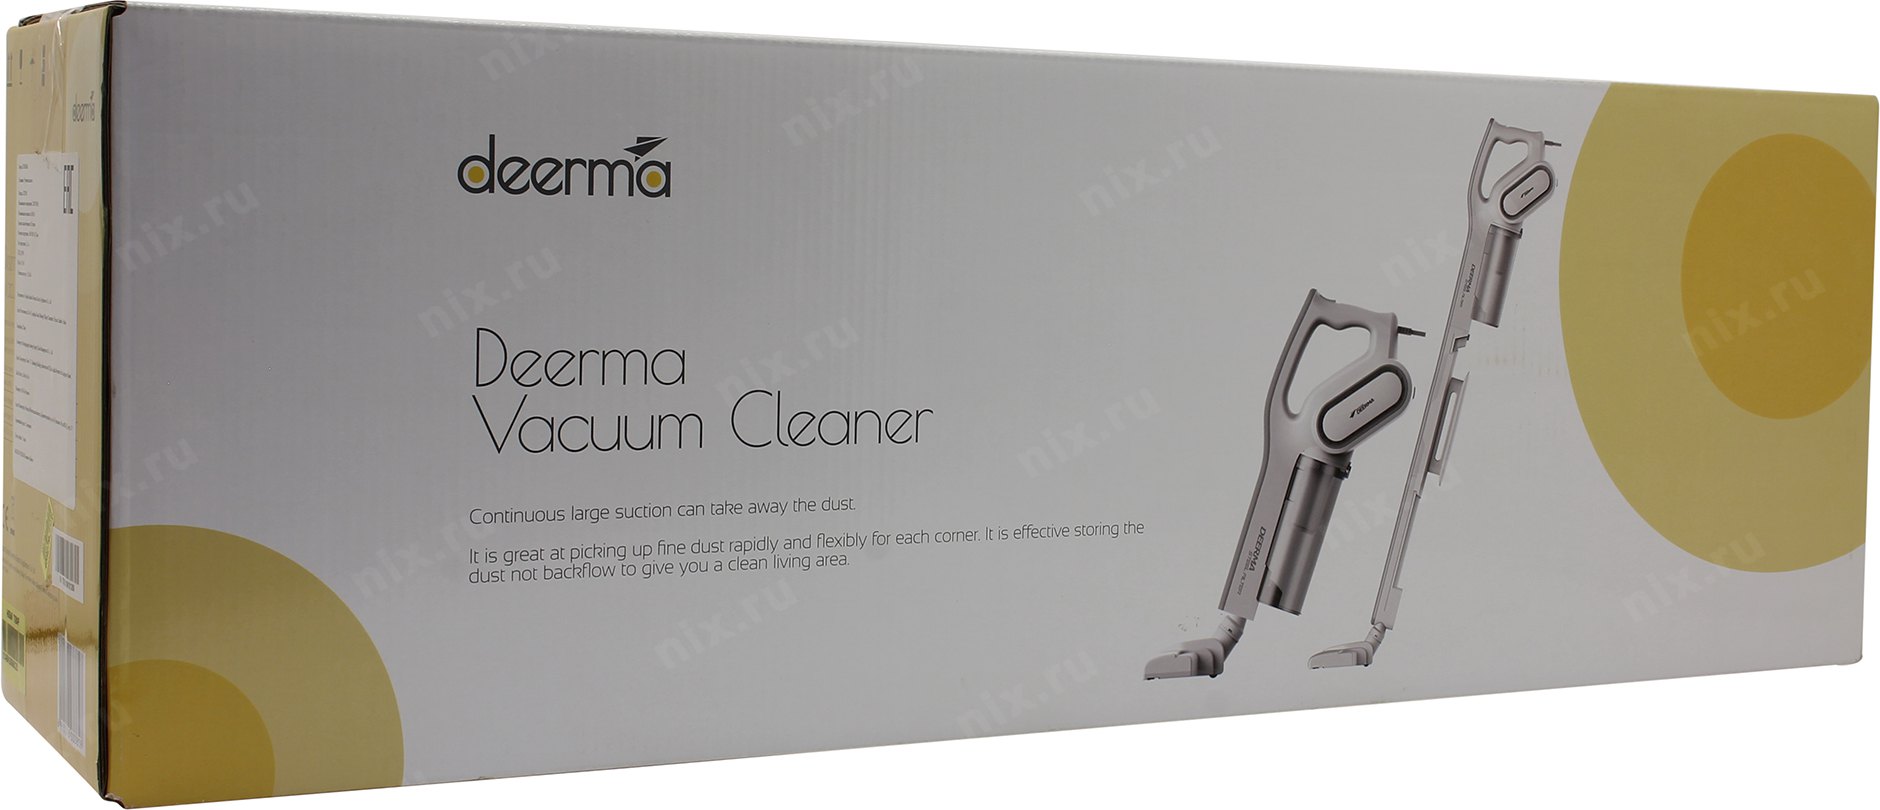 Dx700 pro купить. Пылесос Derma dx700. Дерма 700 пылесос. Xiaomi Deerma Vacuum Cleaner [dx600]. Dx700/dx700s.